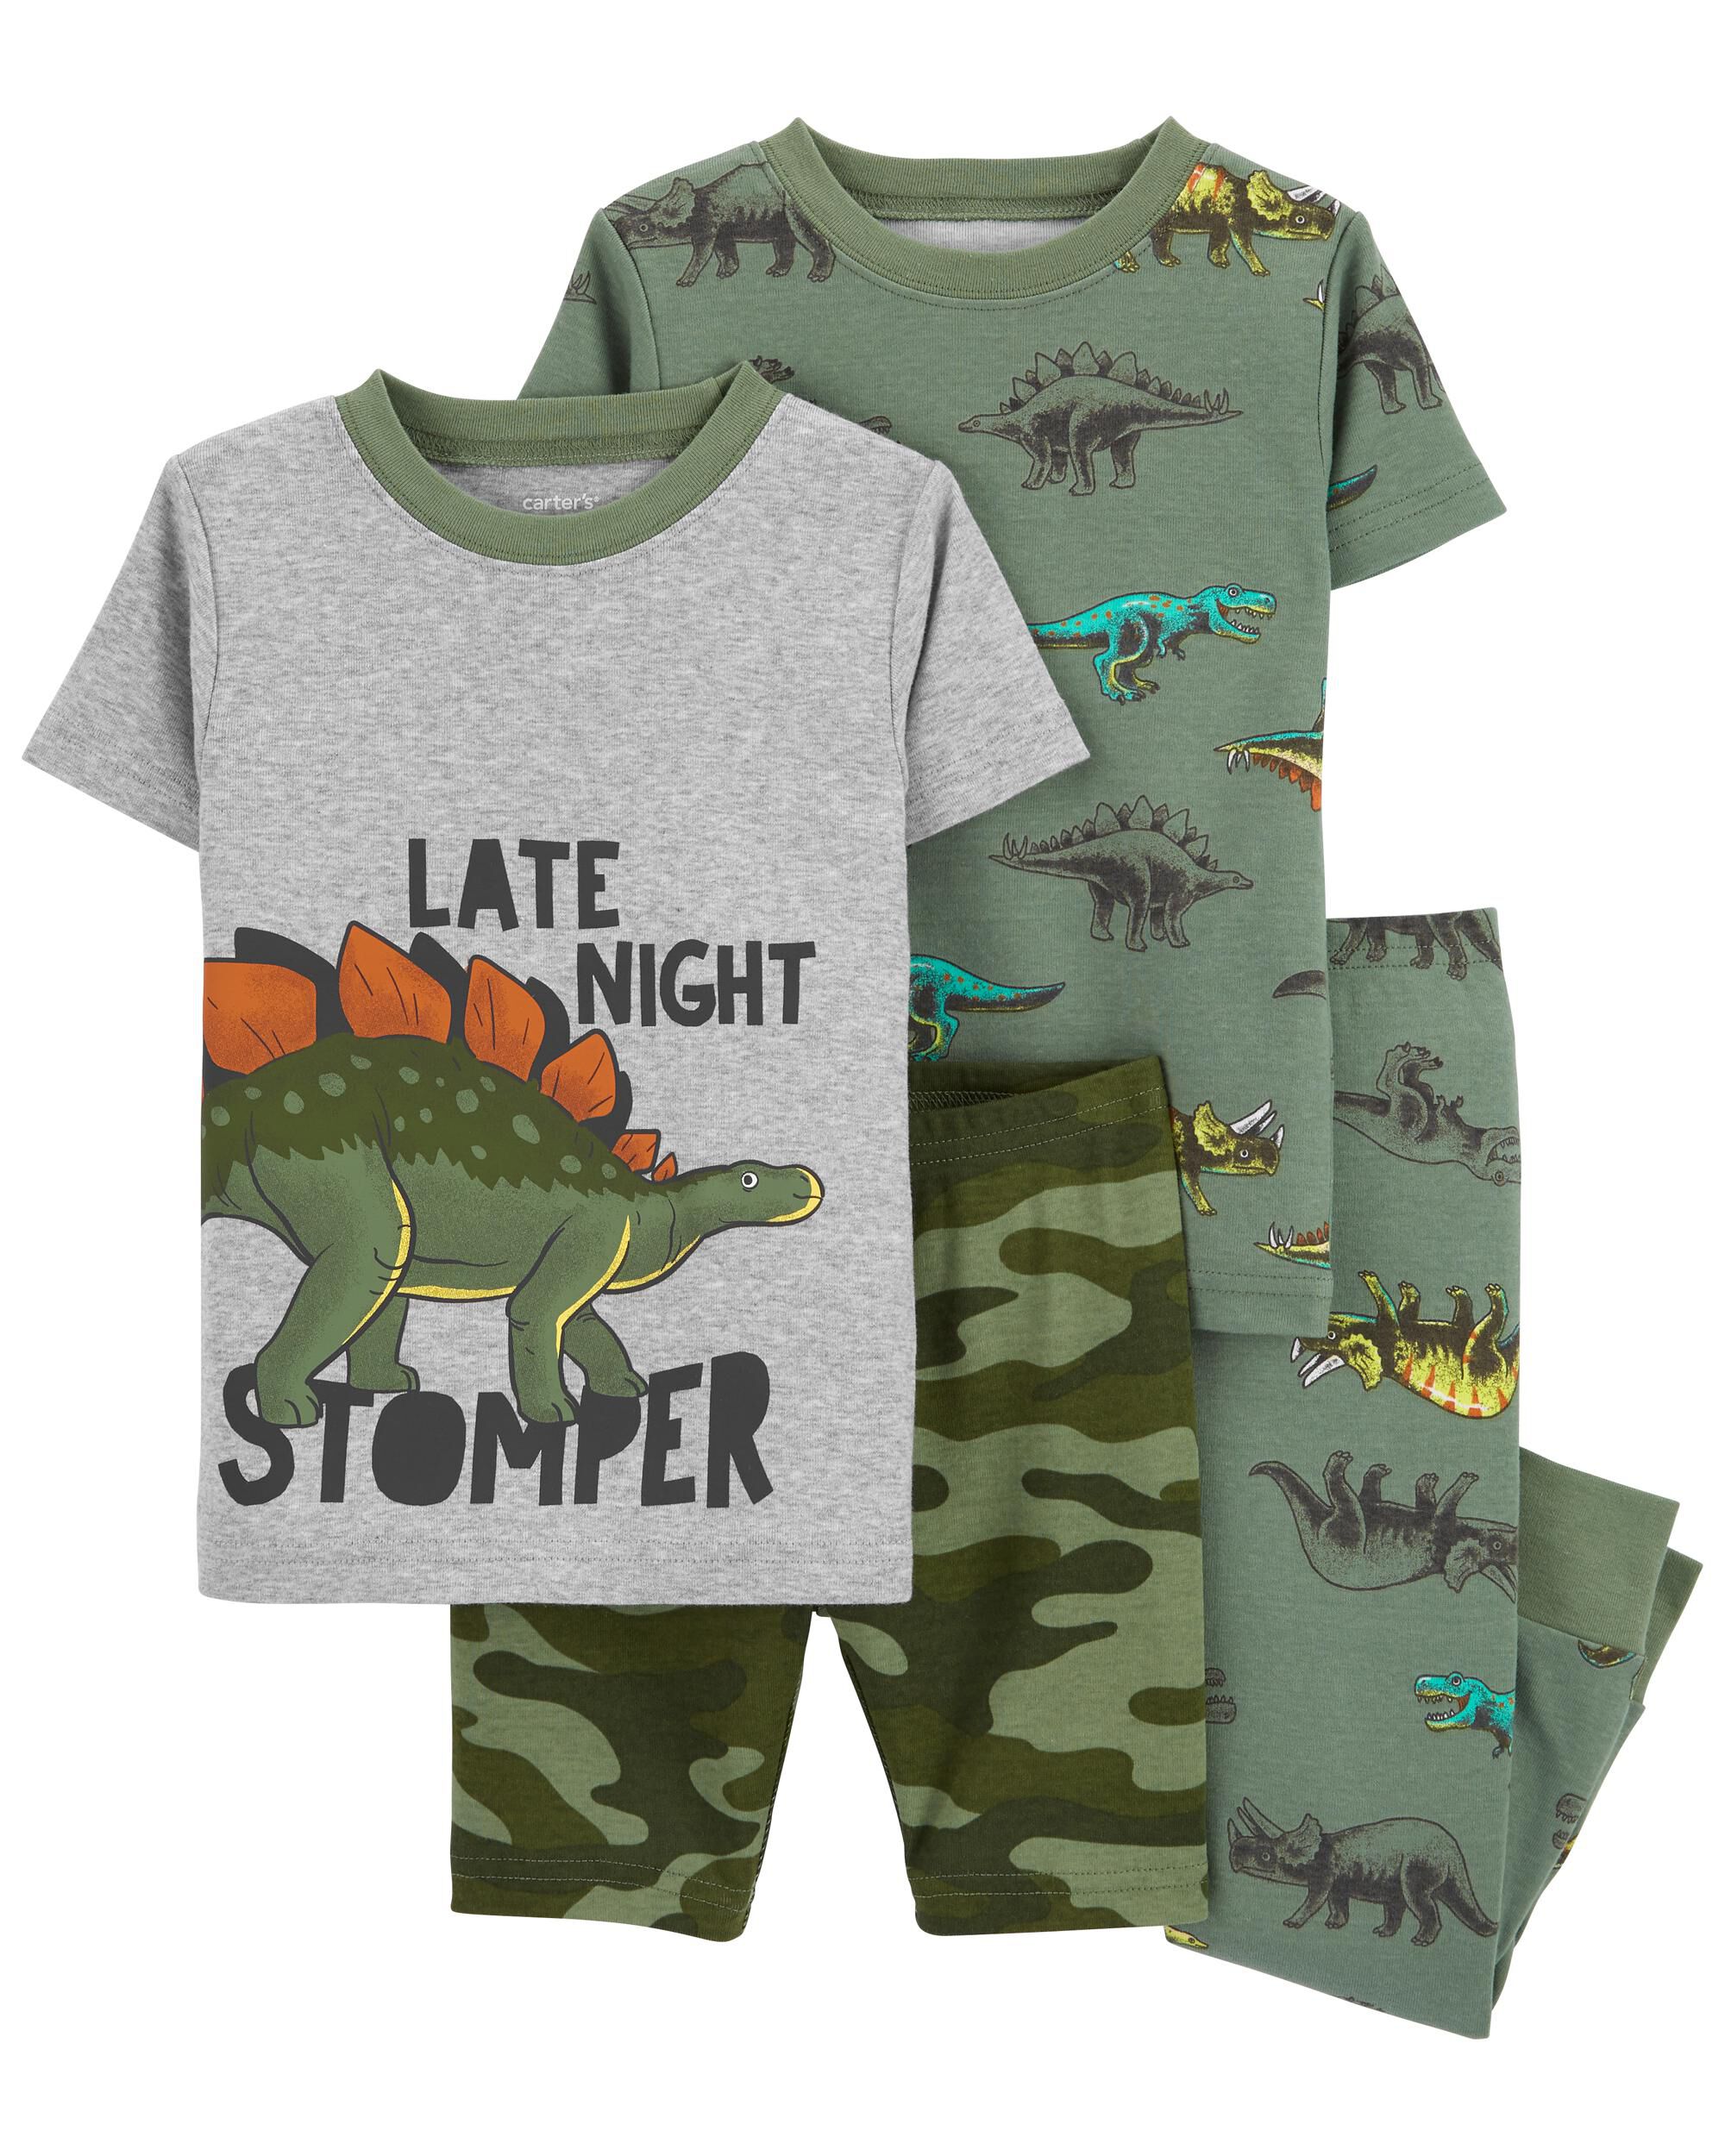 New Carter's Big Boys 4 Piece Dinosaur Pajama Set 6 7 8 